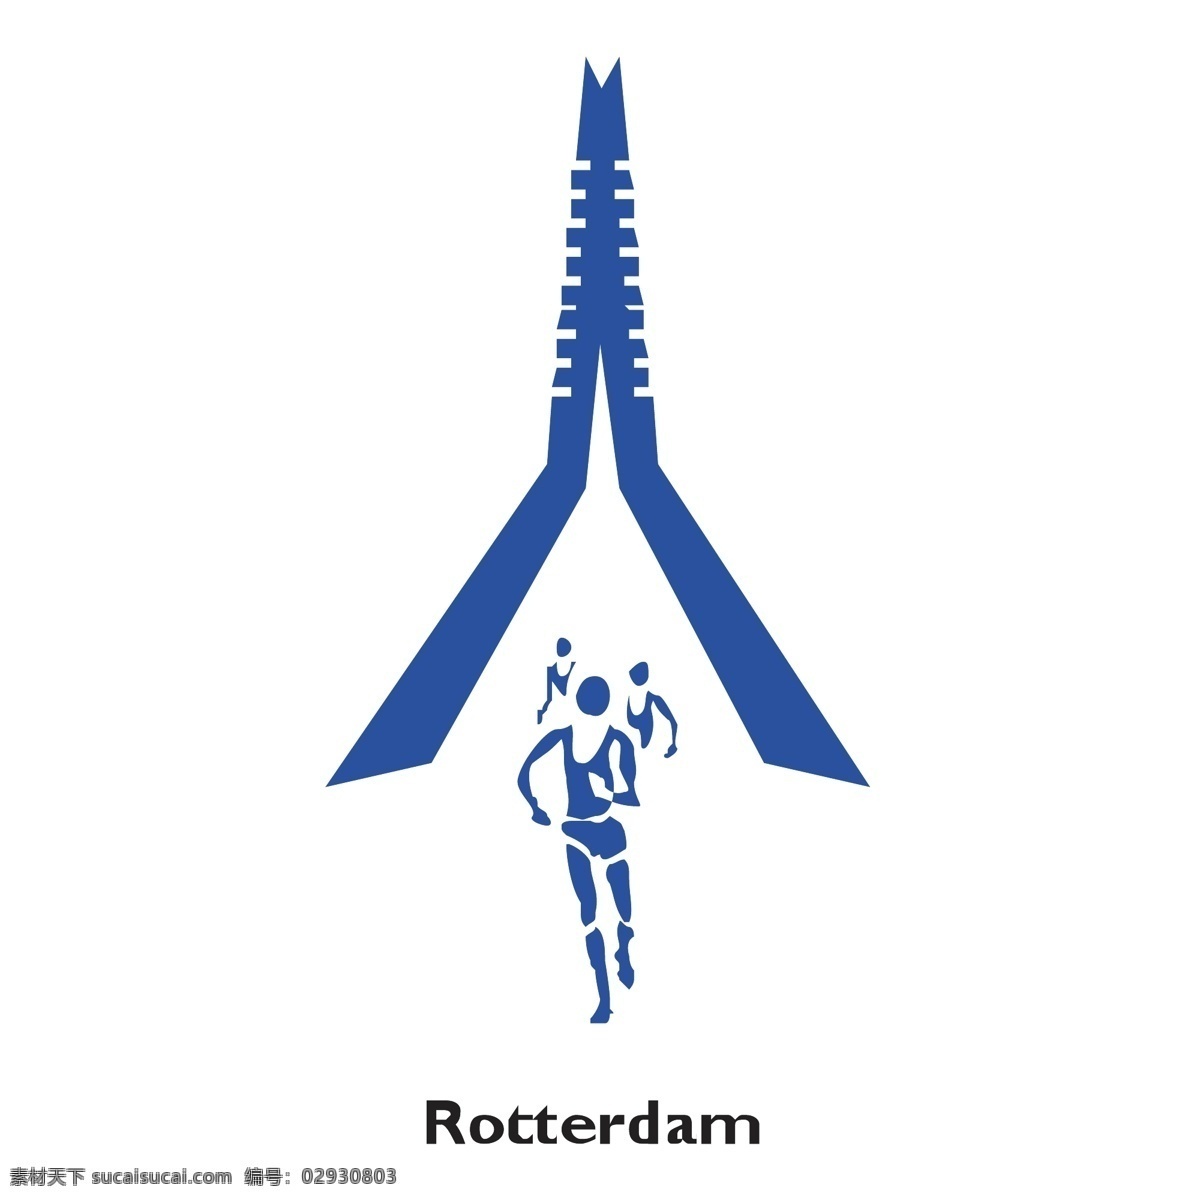 鹿特丹 马拉松 自由 标志 标识 psd源文件 logo设计